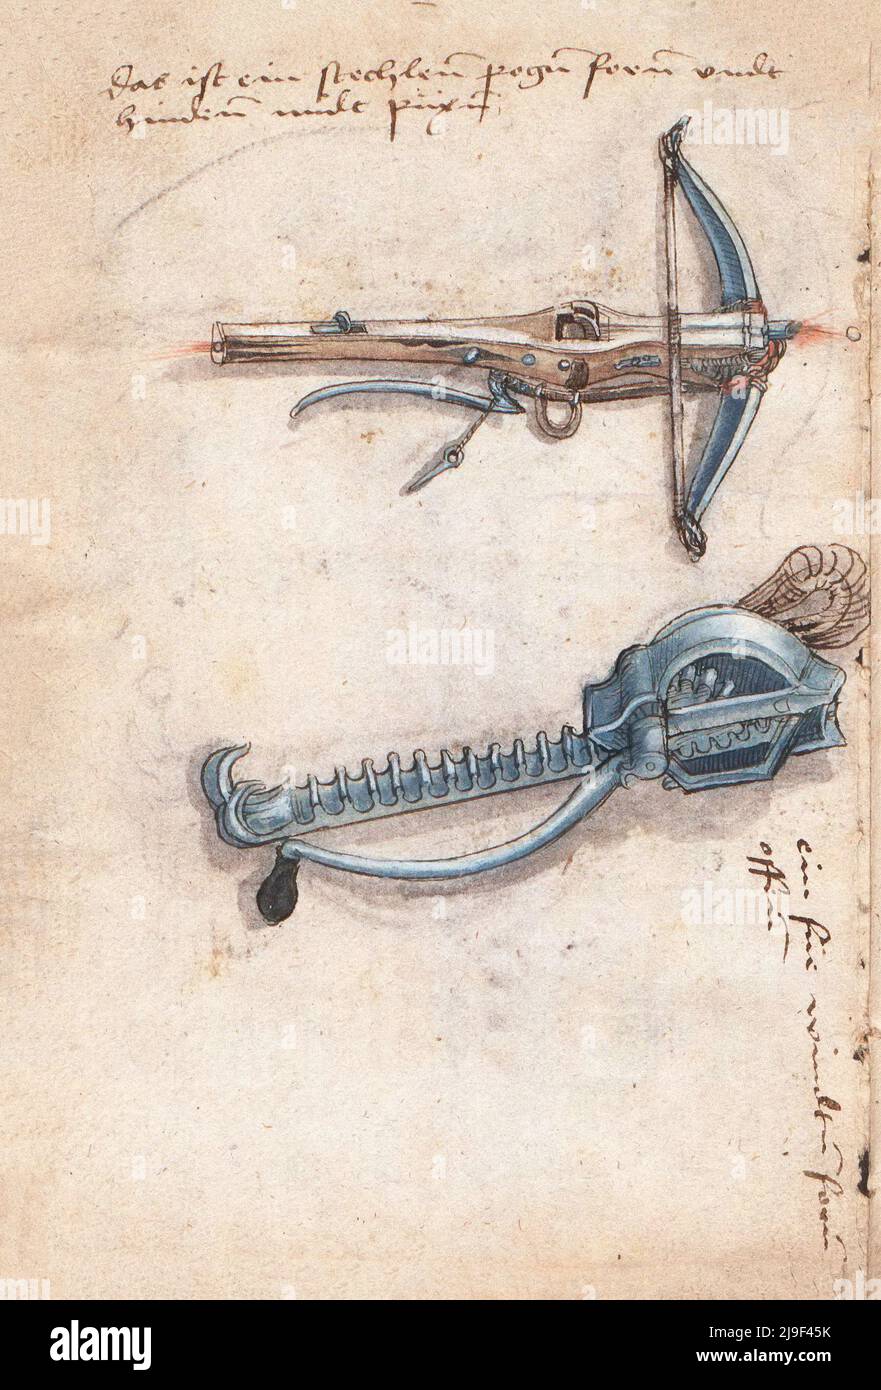 Illustrazione medievale della balestra e della balestra in ferro. Gli strumenti di Martin Löffelholz (1505) Löffelholtz Codex. Illustrazioni e descrizione Foto Stock